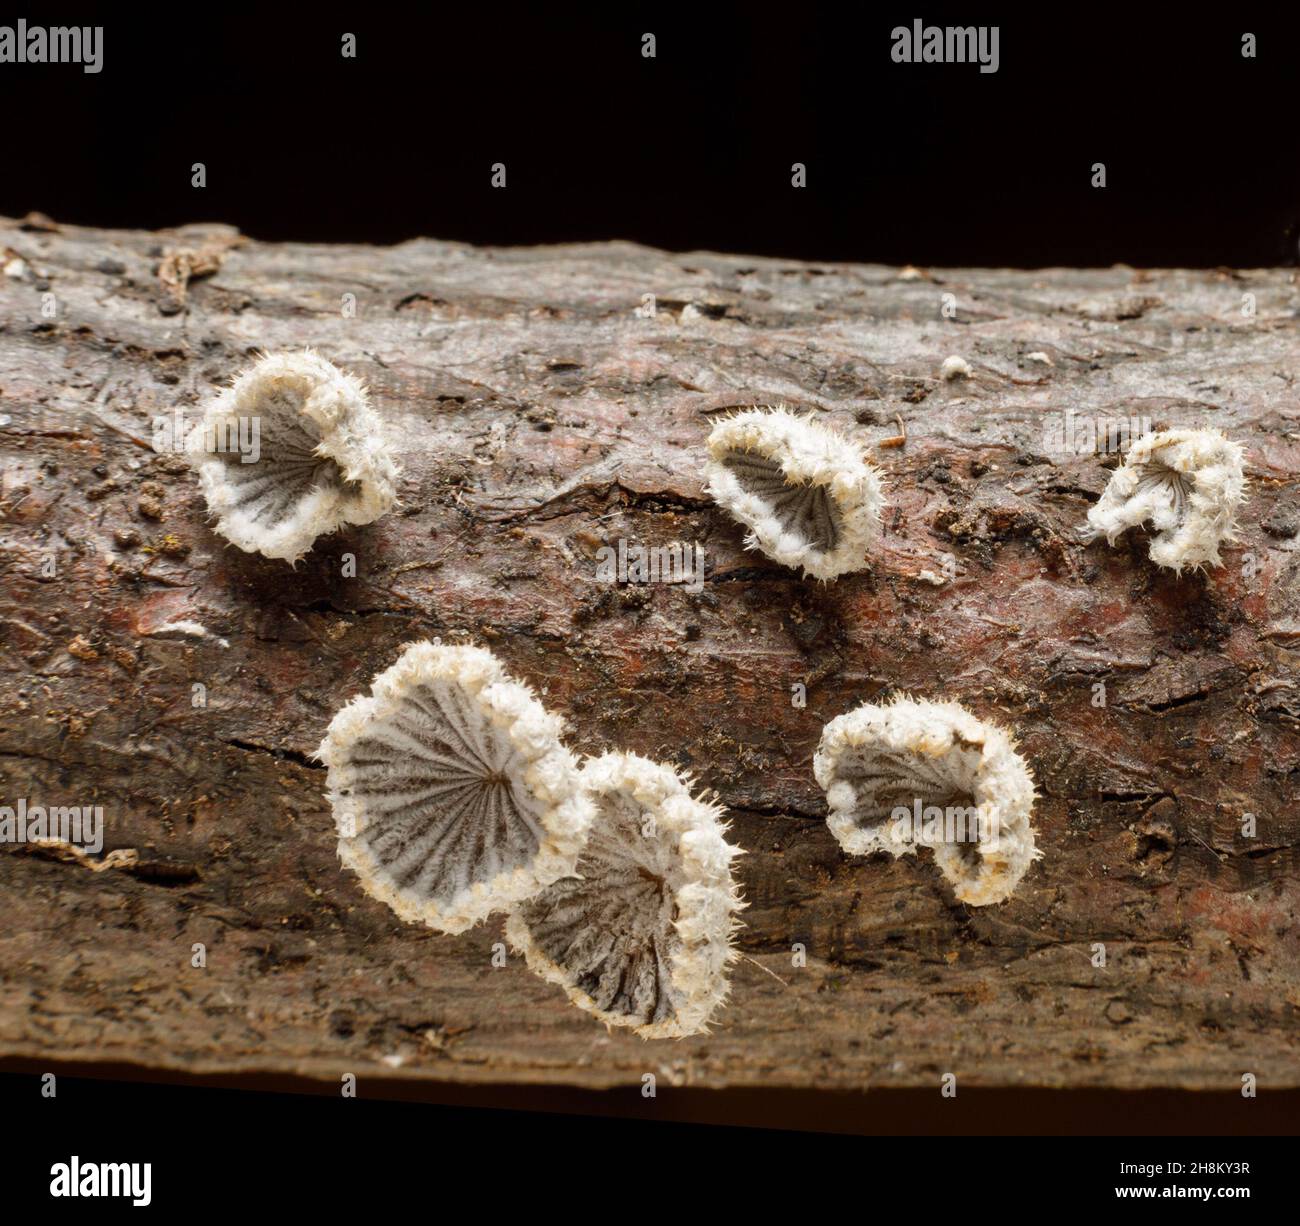 Schizophyllum Commune ist ein Spaltpilz, der auf toten Baumstämmen wächst. Kein kulinarisches Interesse. New York State, USA. Stockfoto